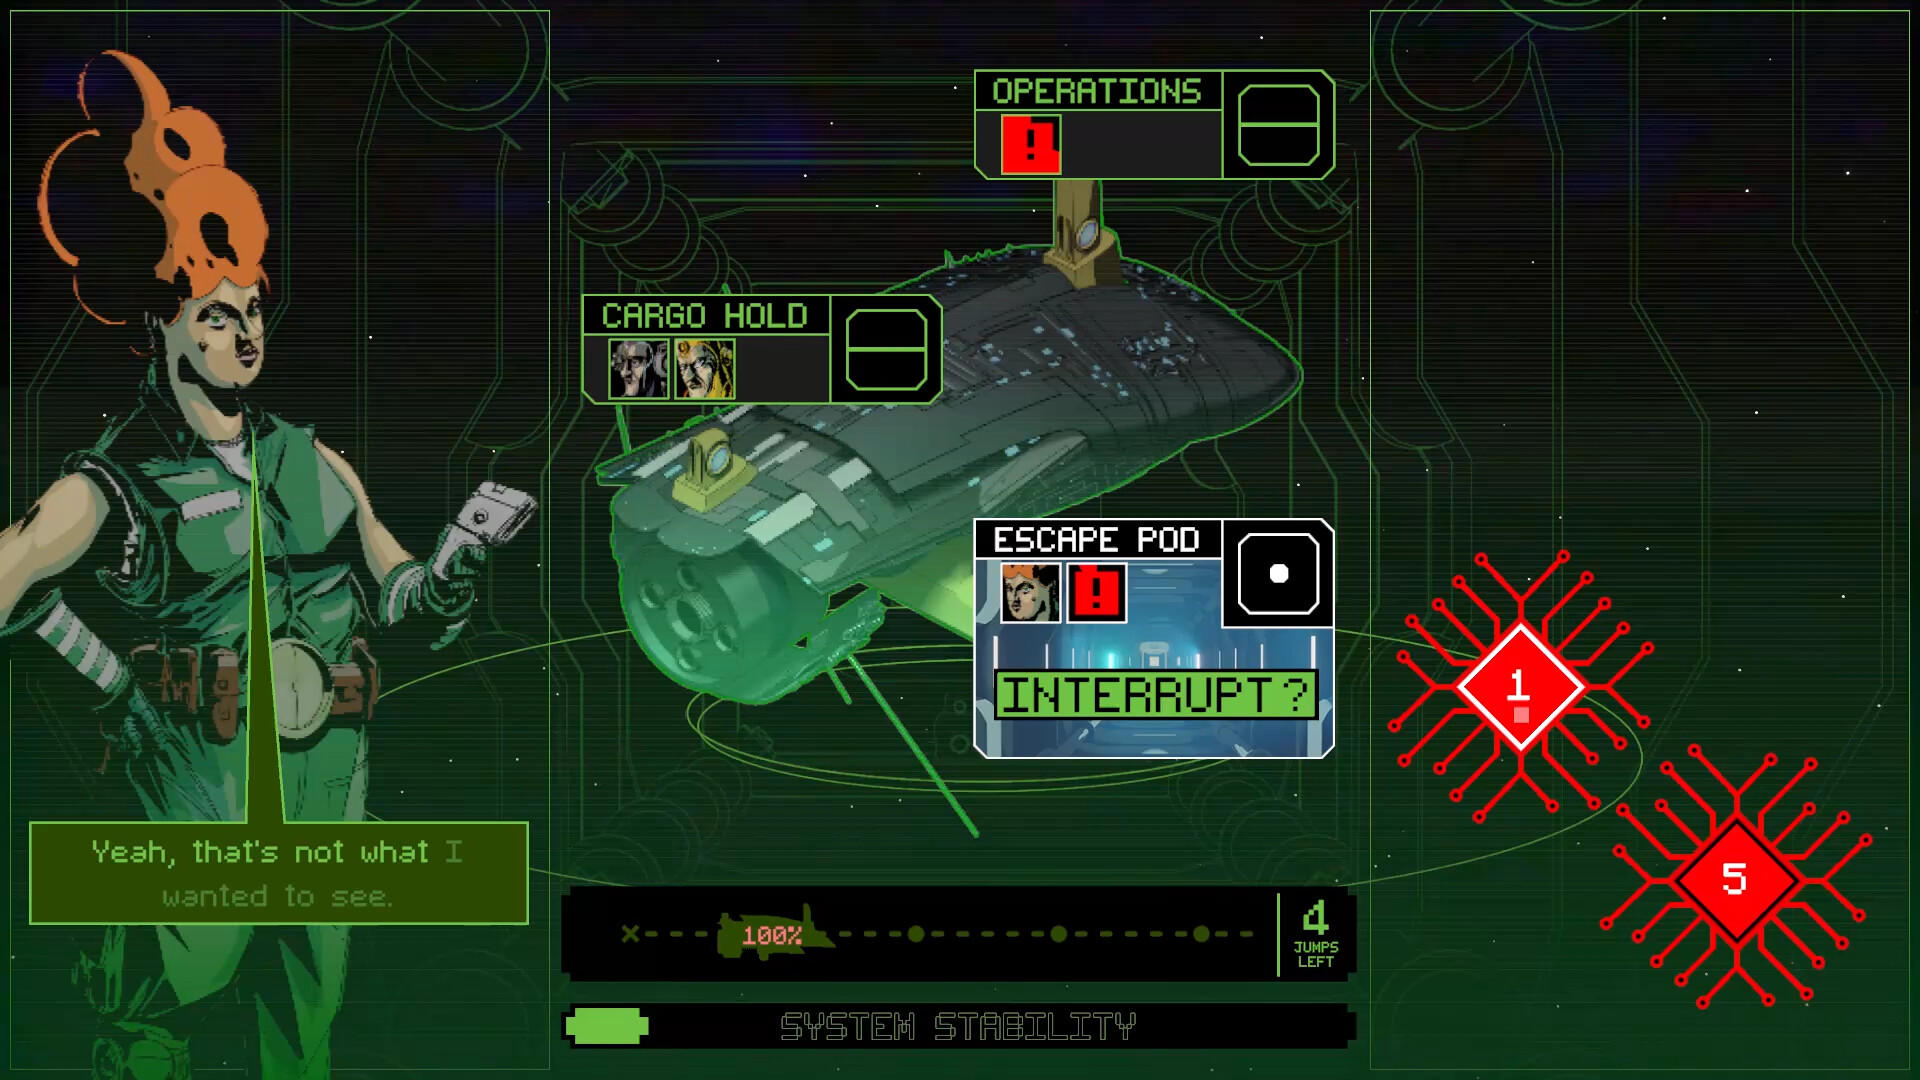 Screenshot 1 of Cuentos del arcade: Asesinato en la nave estelar 